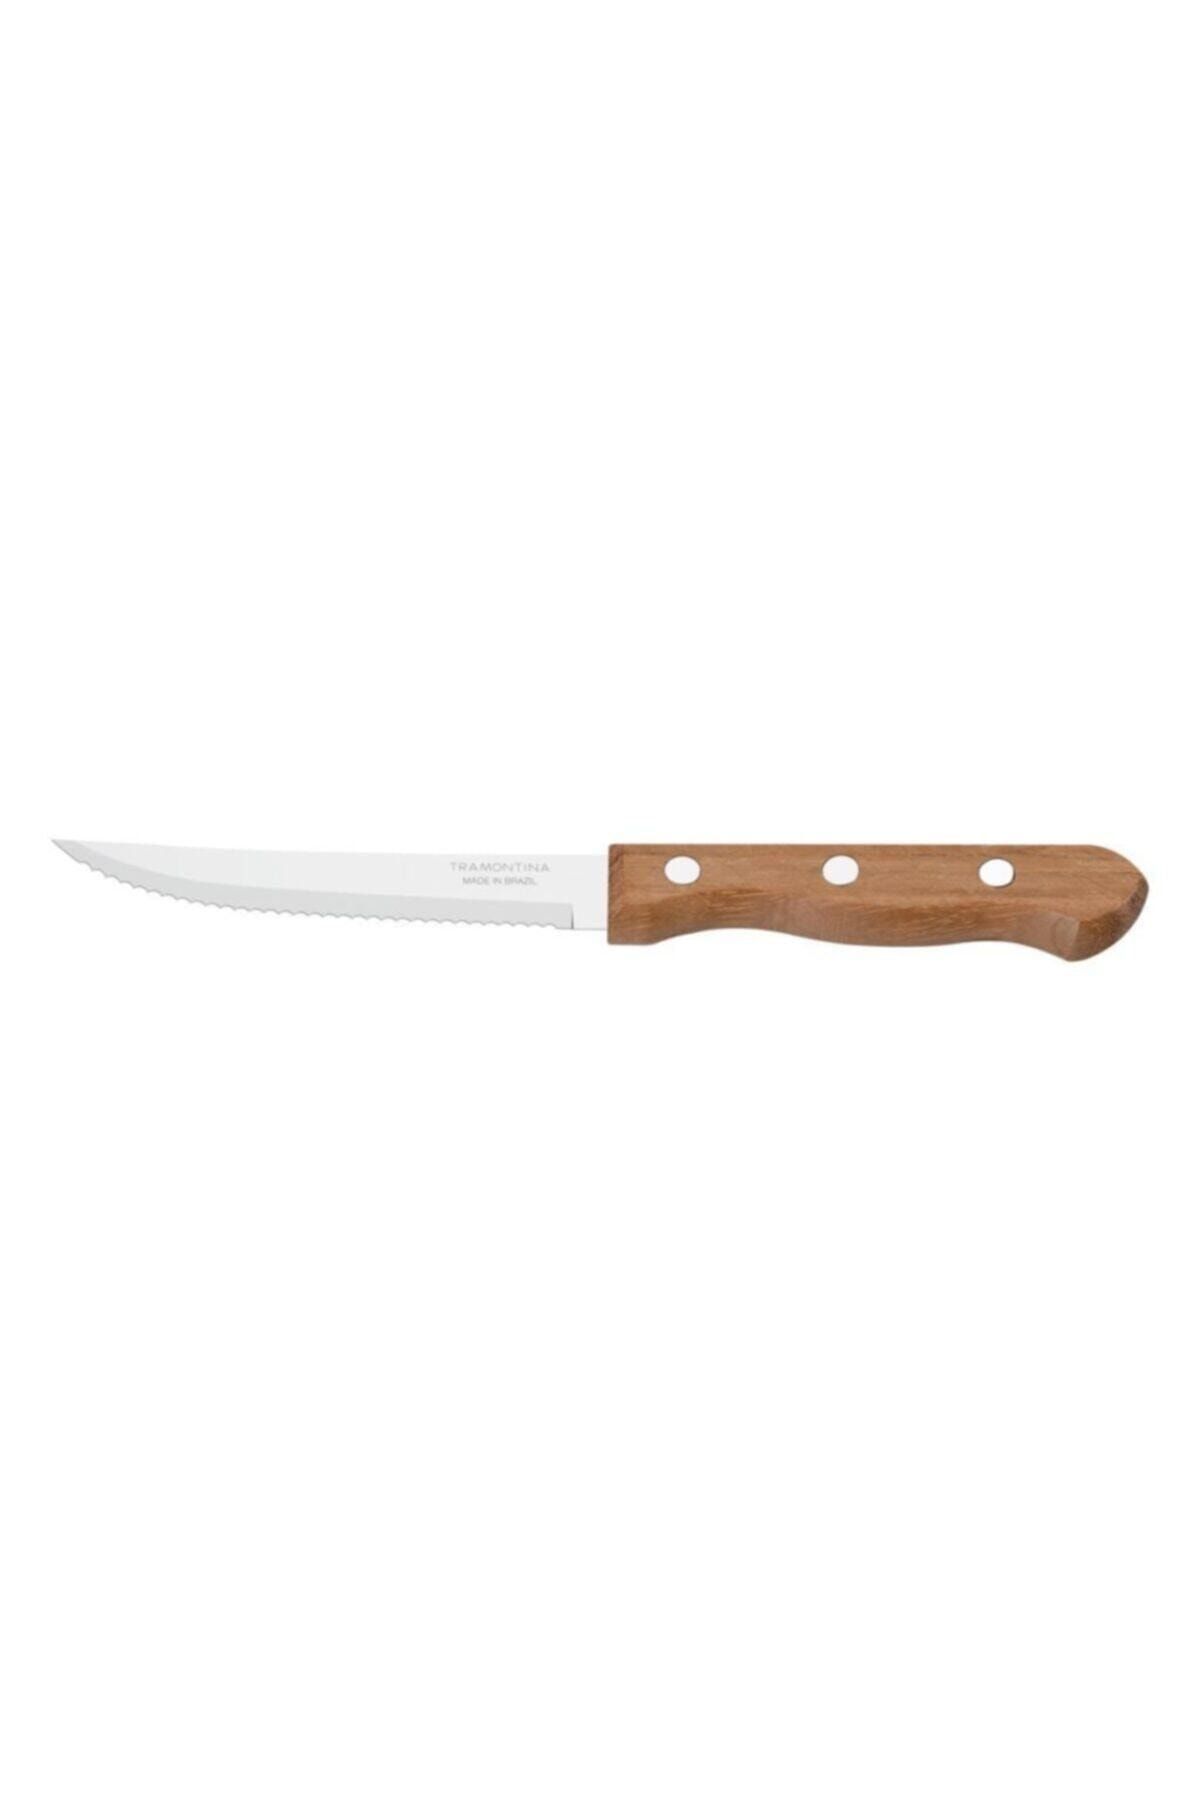 TRAMONTINA Churrasco 22312/005 13cm Biftek-steak Bıçağı (12li Kutu)?